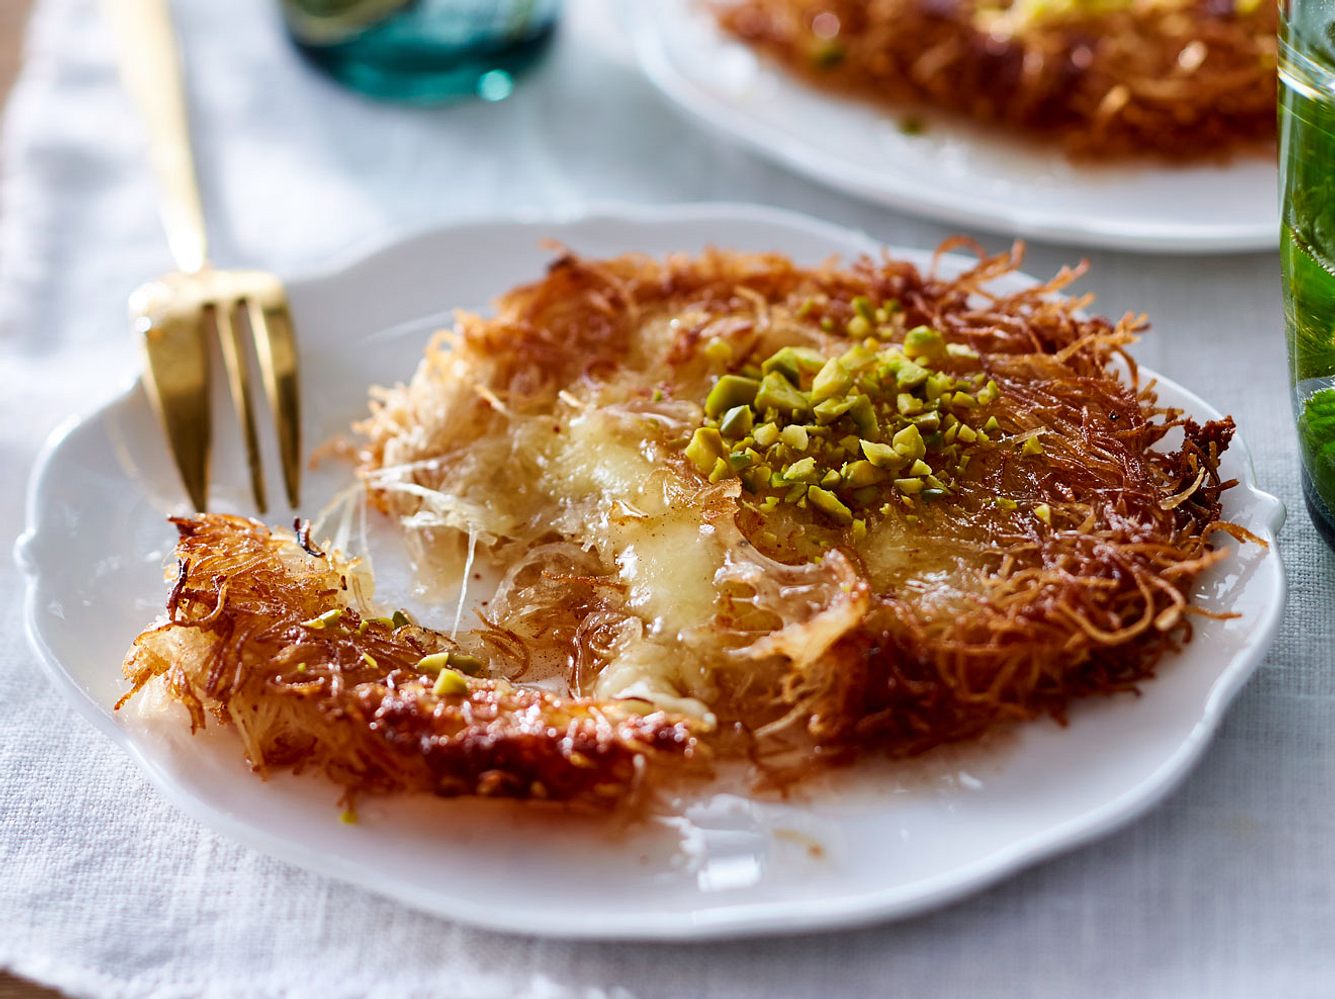 Süß oder herzhaft? Künefe ist eine türkische Süßspeise, die beides verbindet.